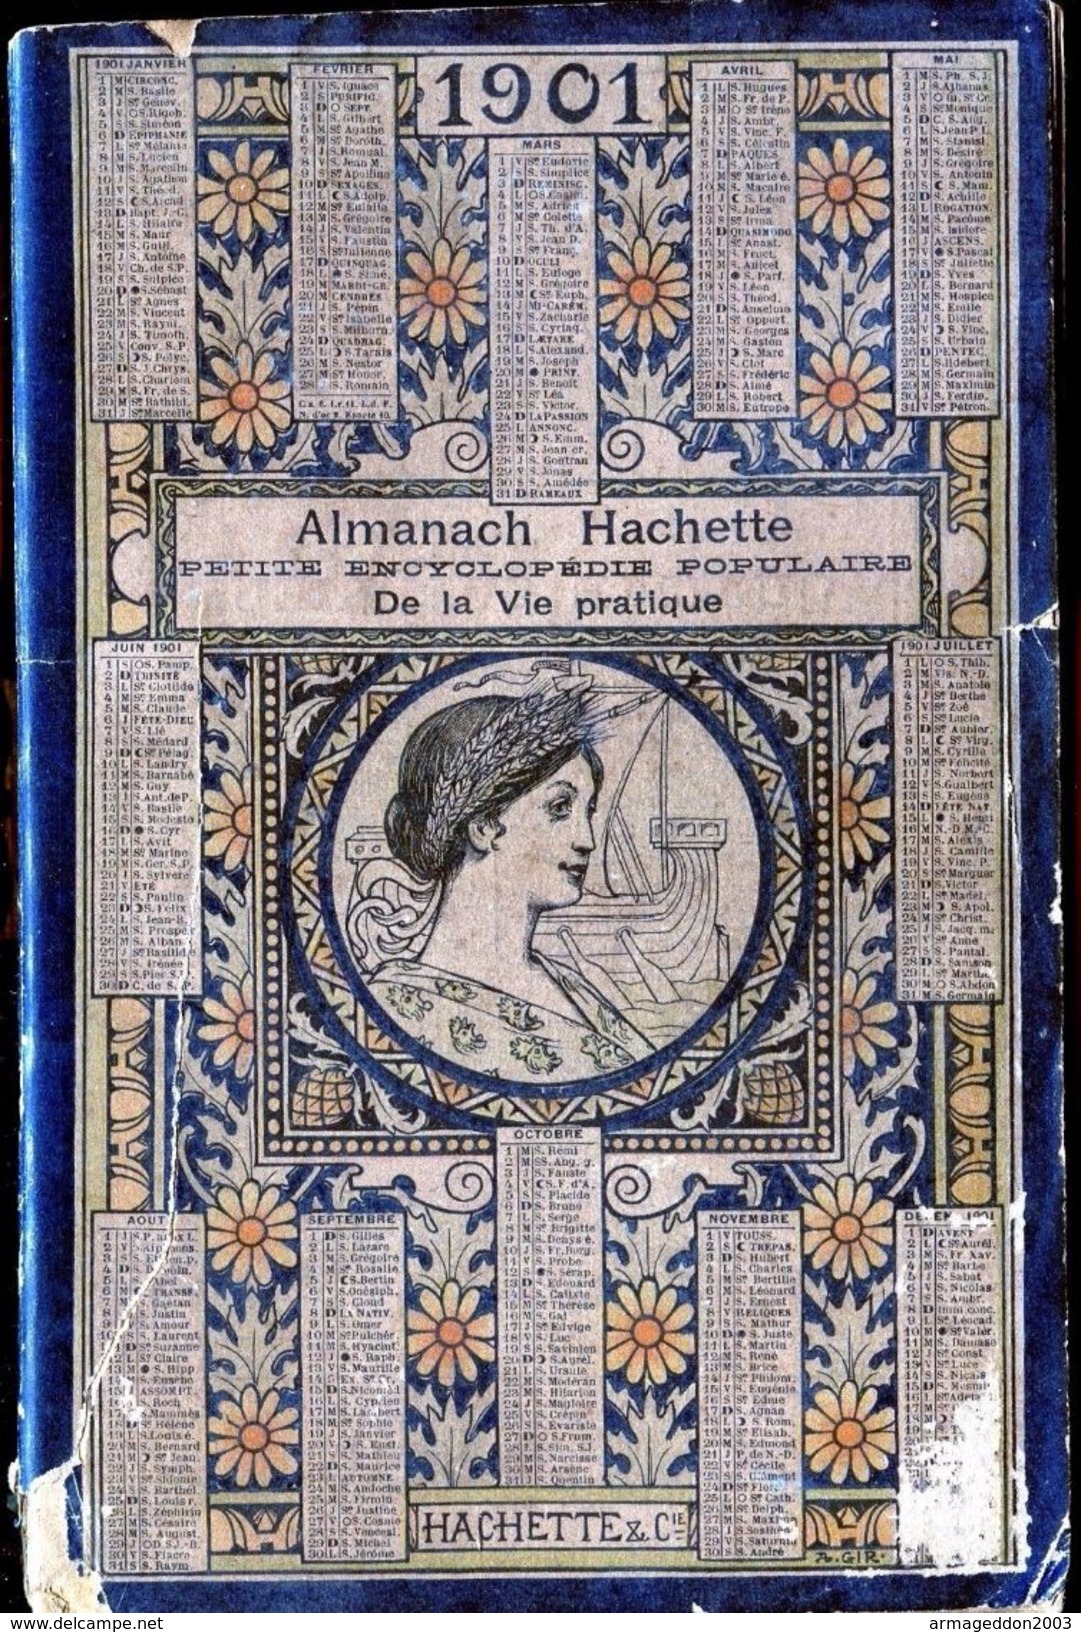 ALMANACH HACHETTE - 1901 Petite Encyclopédie Populaire De La Vie Pratique - Grand Format : 1901-20